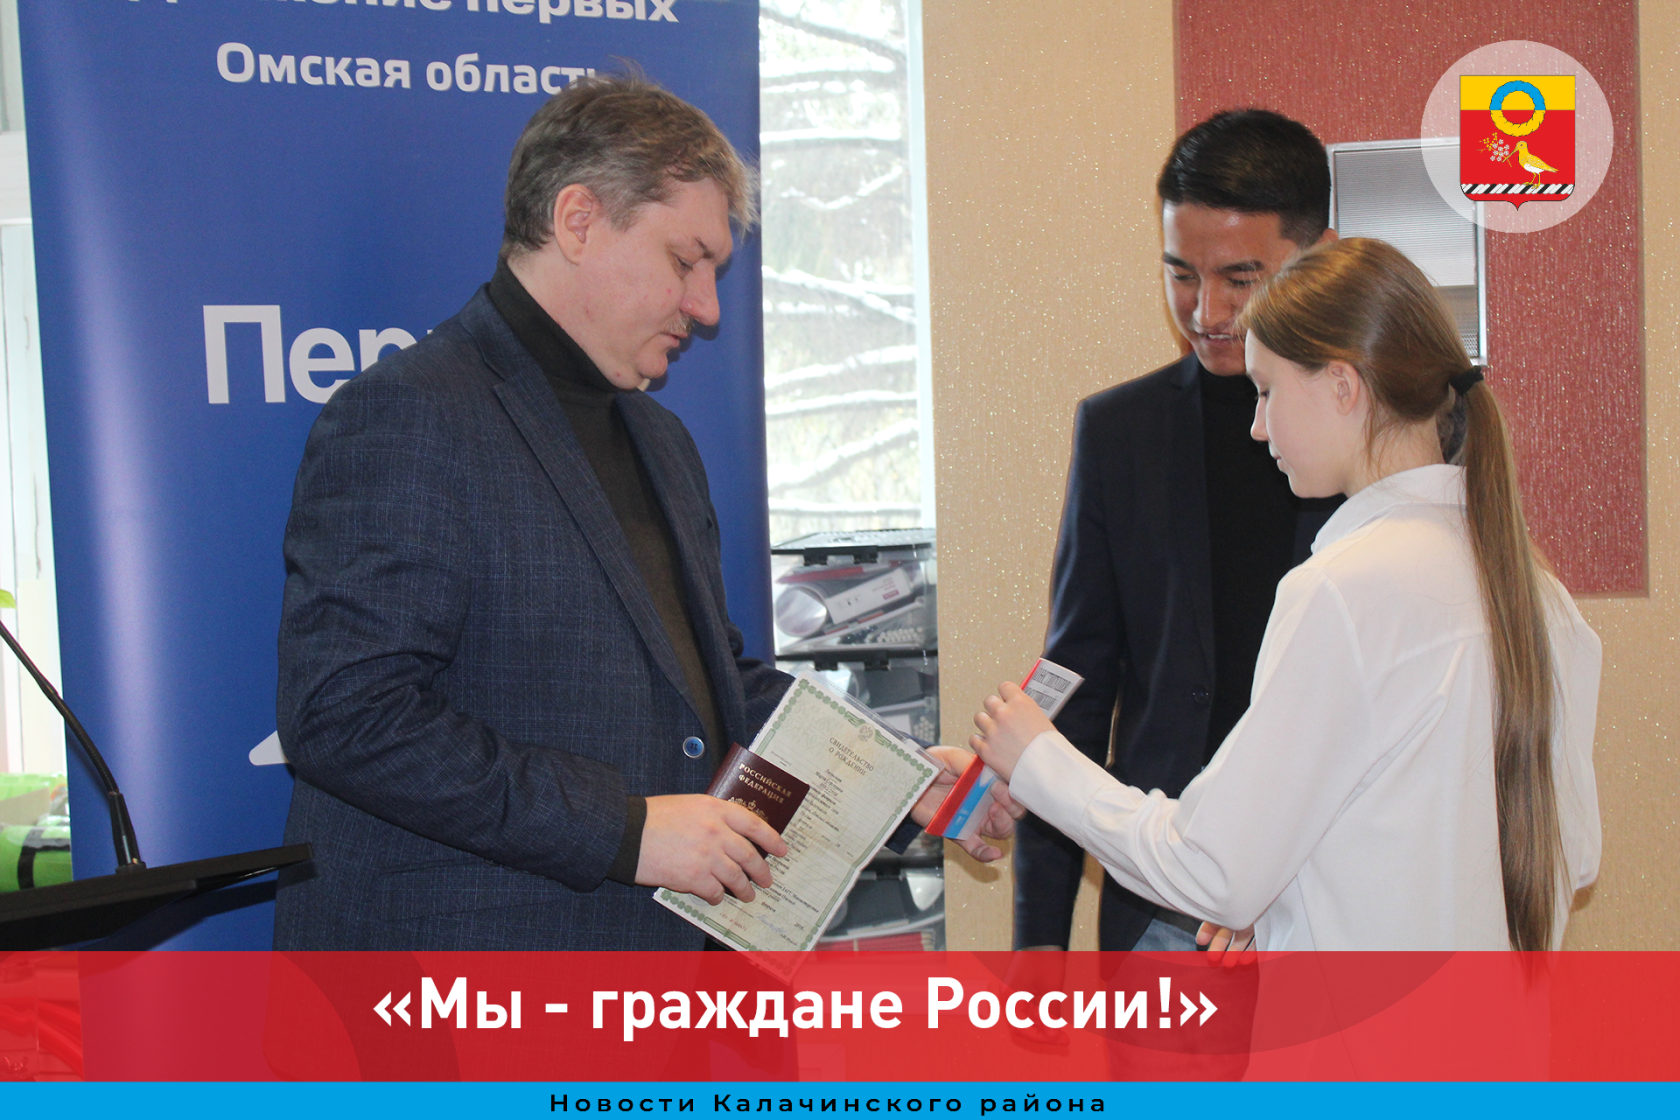 В рамках проекта Движения Первых «Мы - граждане России!» состоялась торжественная церемония вручения паспортов.